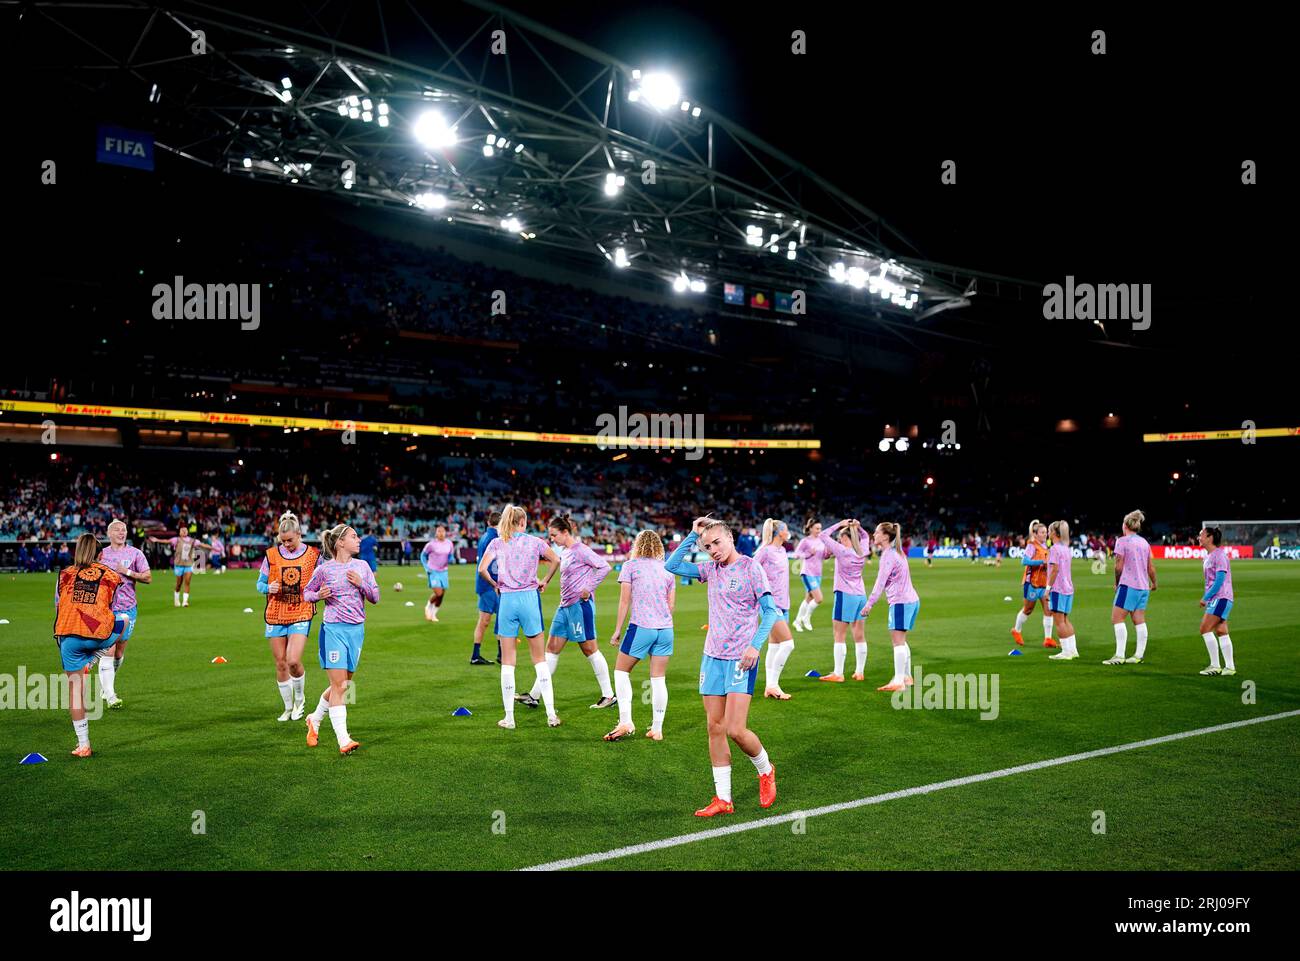 Die englischen Spieler wärmen sich vor dem Endspiel der FIFA Frauen-Weltmeisterschaft im Stadion Australien, Sydney, auf. Bilddatum: Sonntag, 20. August 2023. Stockfoto